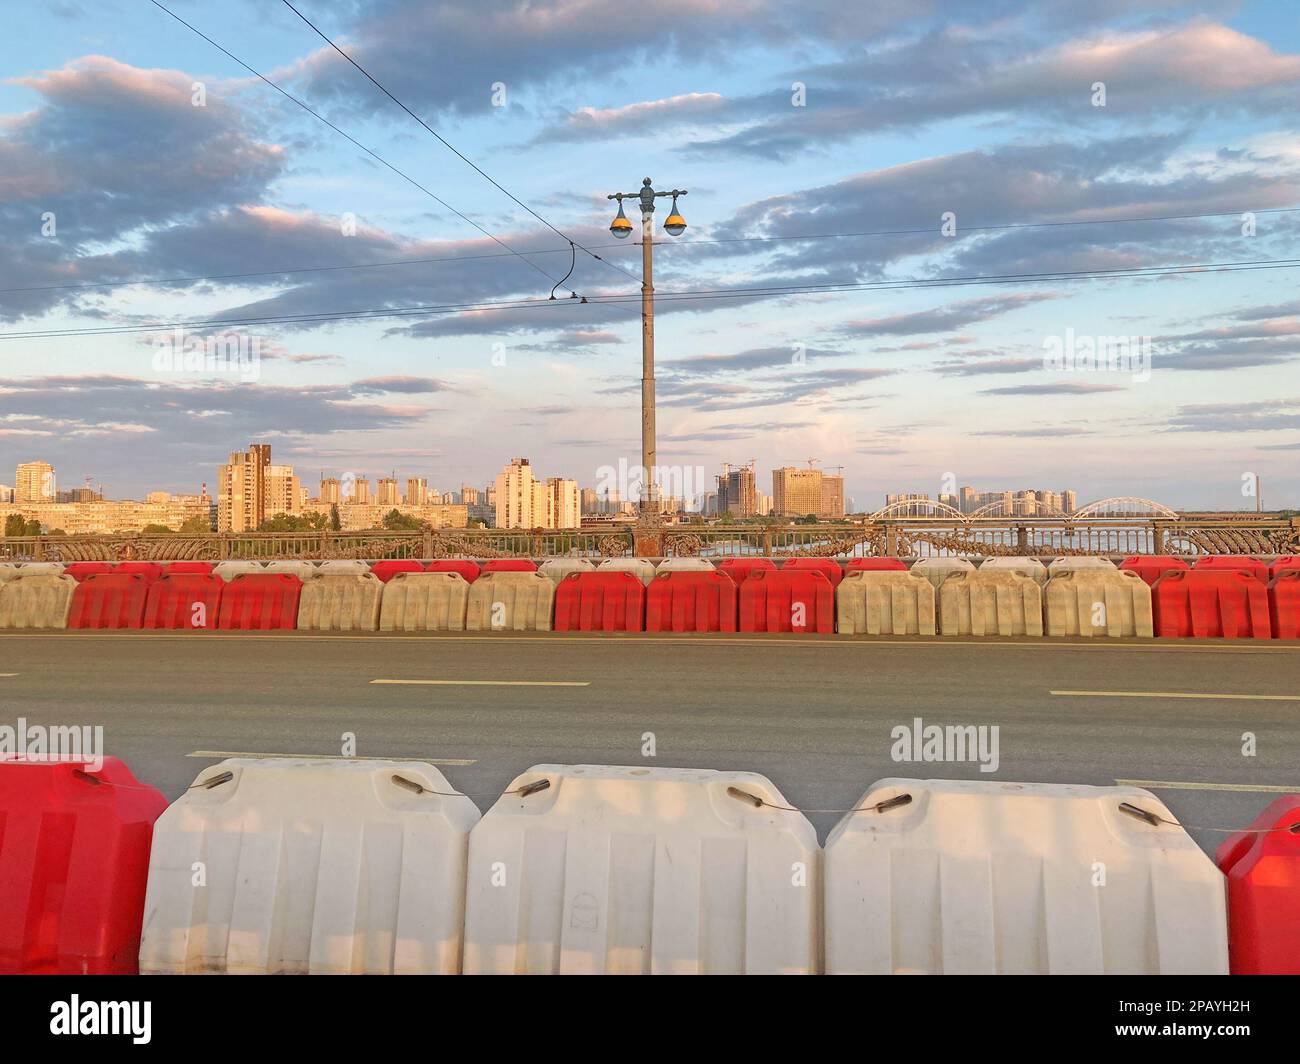 Barrières routières en plastique remplies d'eau rouge et blanche. clôtures en plastique rouge et blanc sur la route de l'autoroute, sur le périphérique de la ville moderne. r Banque D'Images